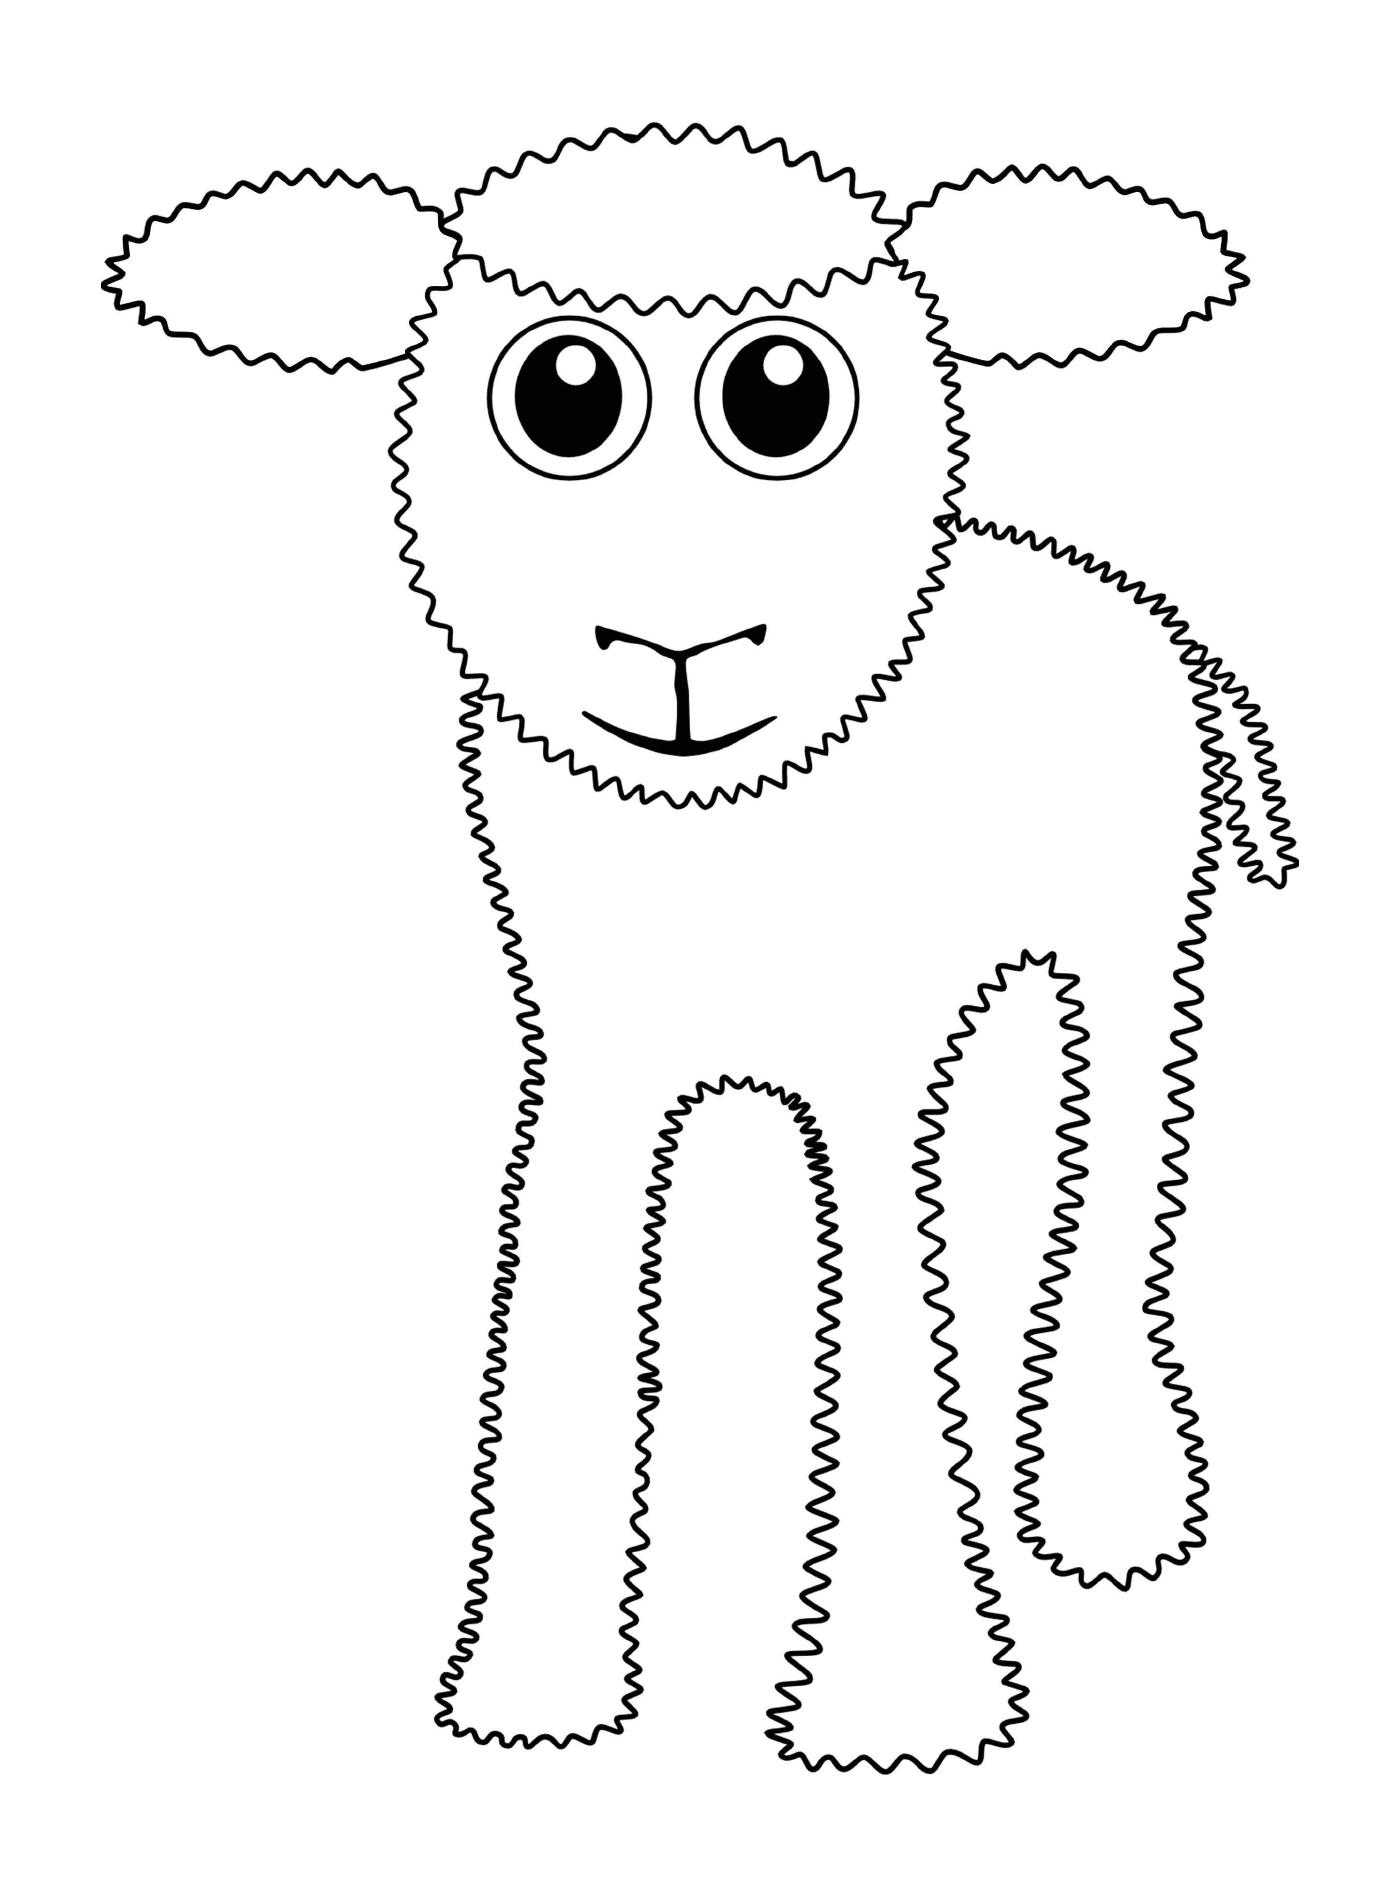  Pequena ovelha, tão adorável 